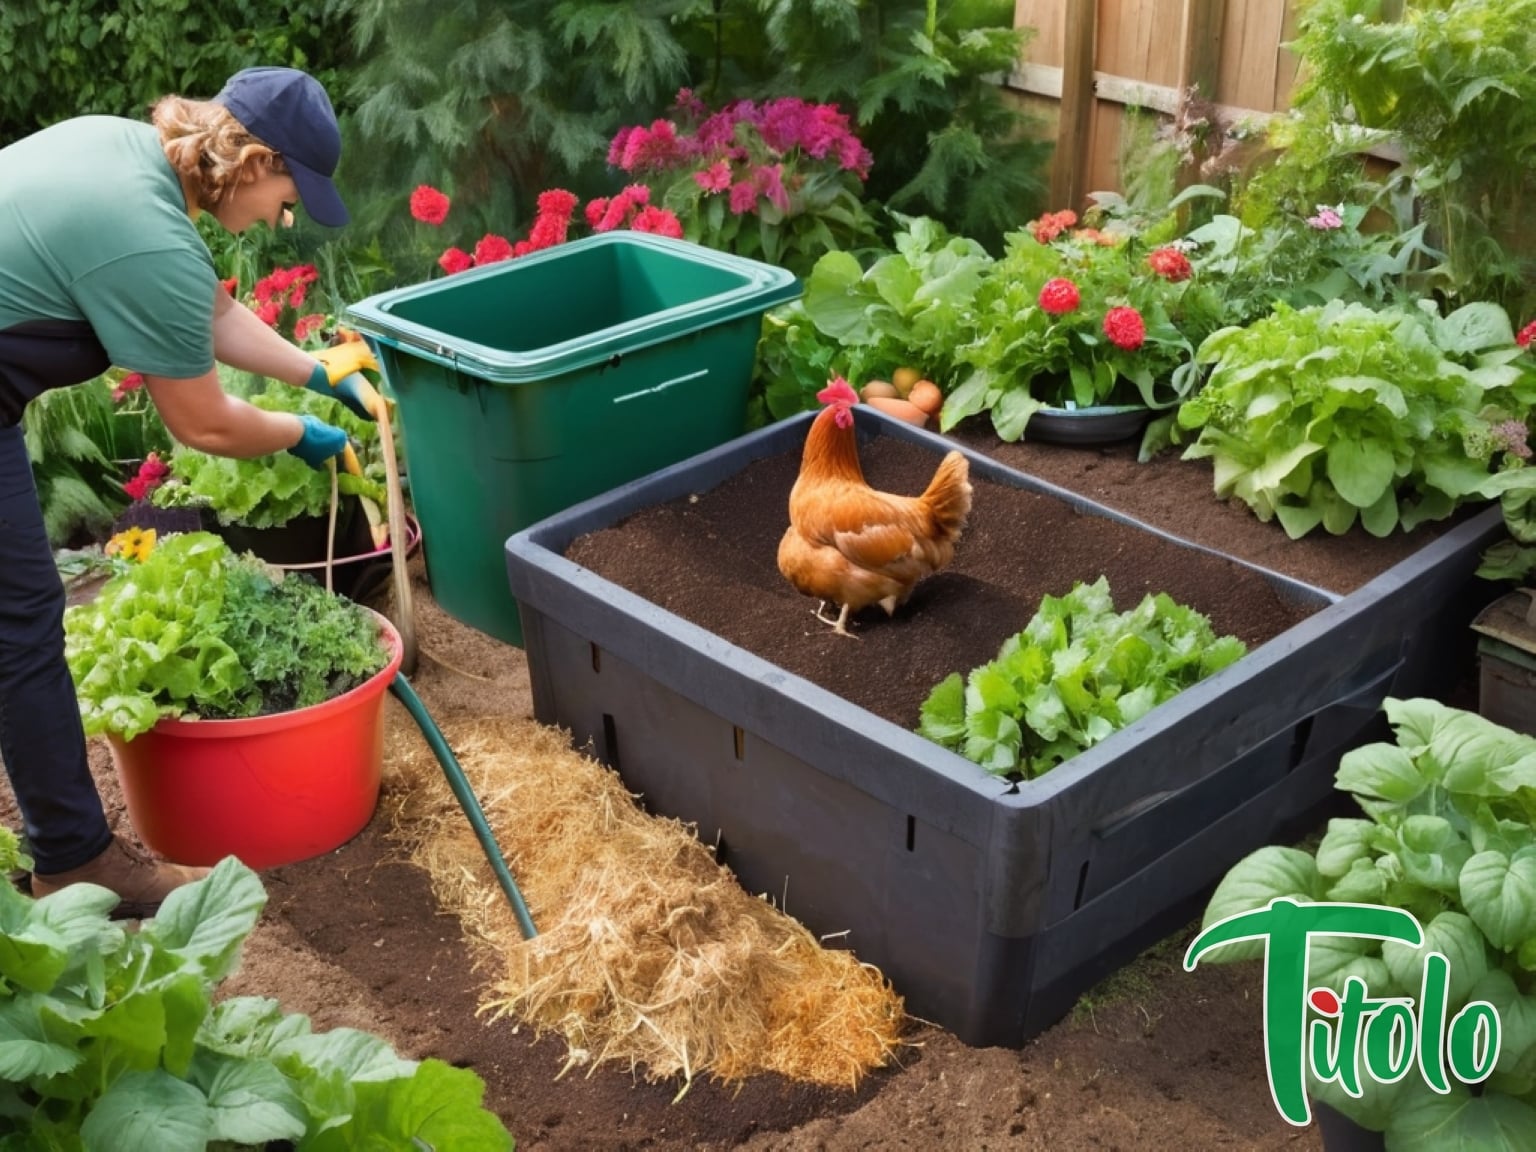 Effiziente Methoden zur Kompostierung von Hühnerabfällen Autarkes Leben 15